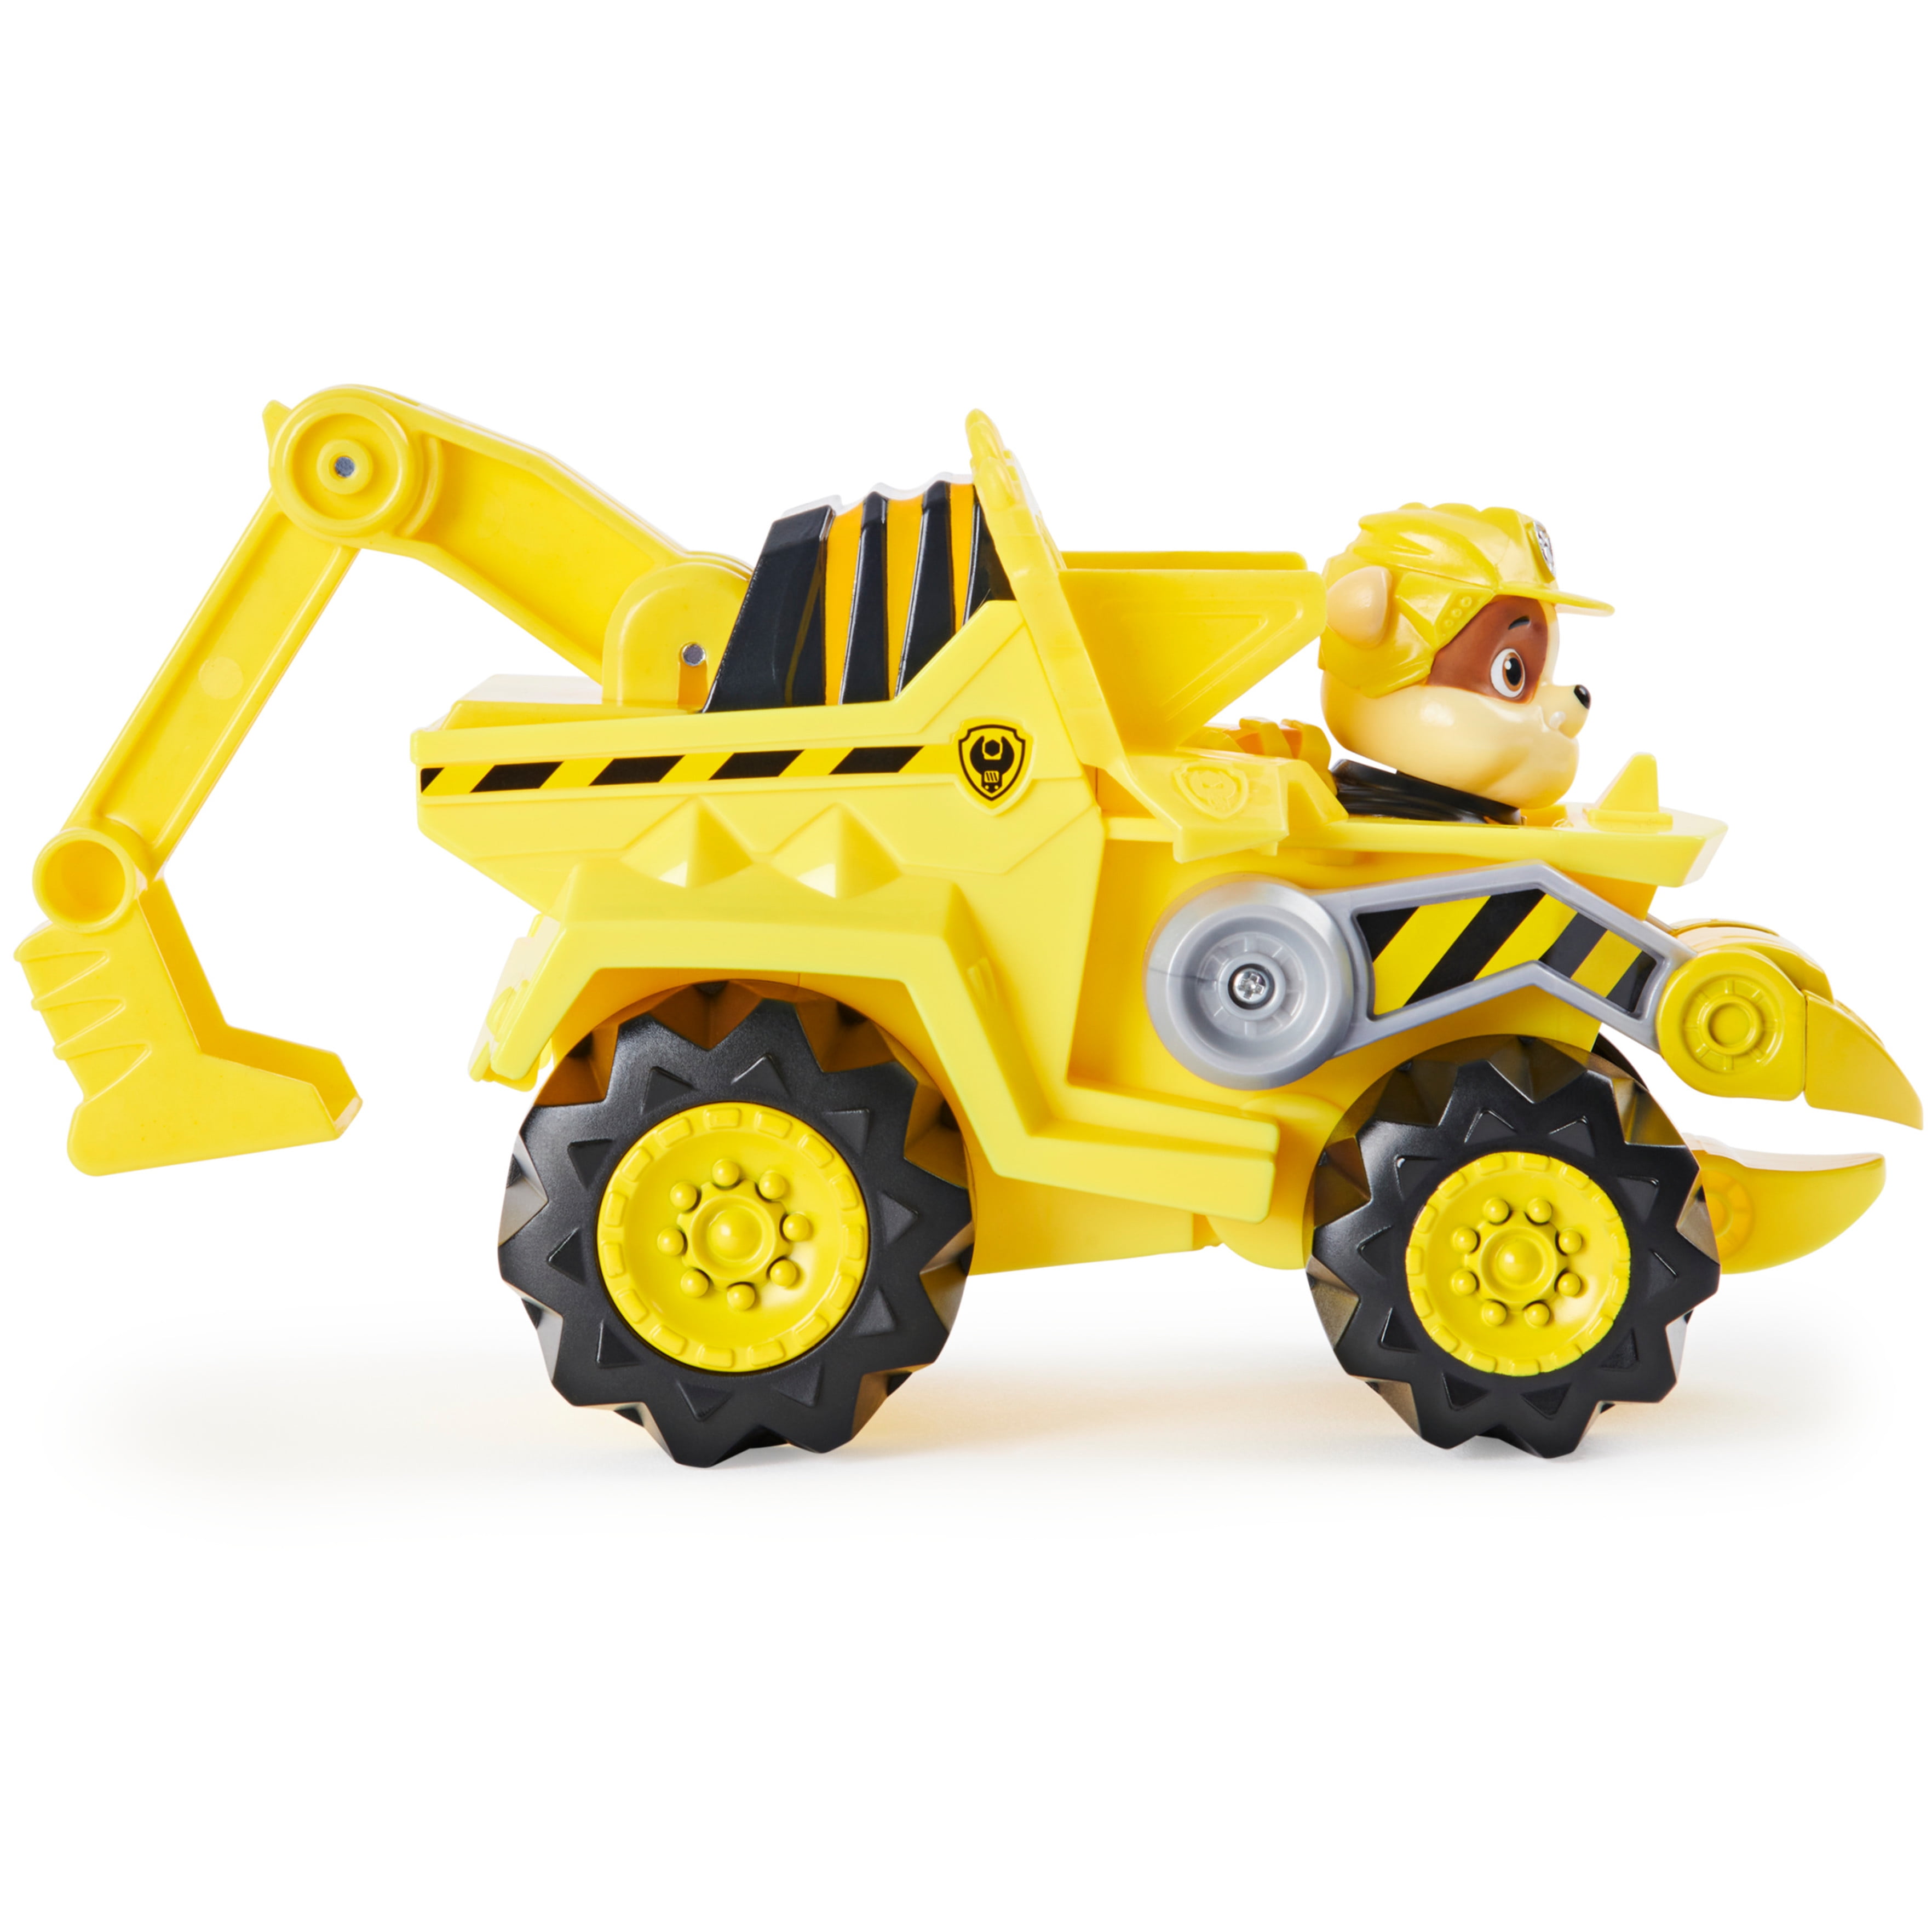 Pat patrouille - vehicule + figurine deluxe zuma dino rescue paw patrol -  6059524 - voiture a remonter jeu jouet enfant 3 ans SPI6059524 - Conforama